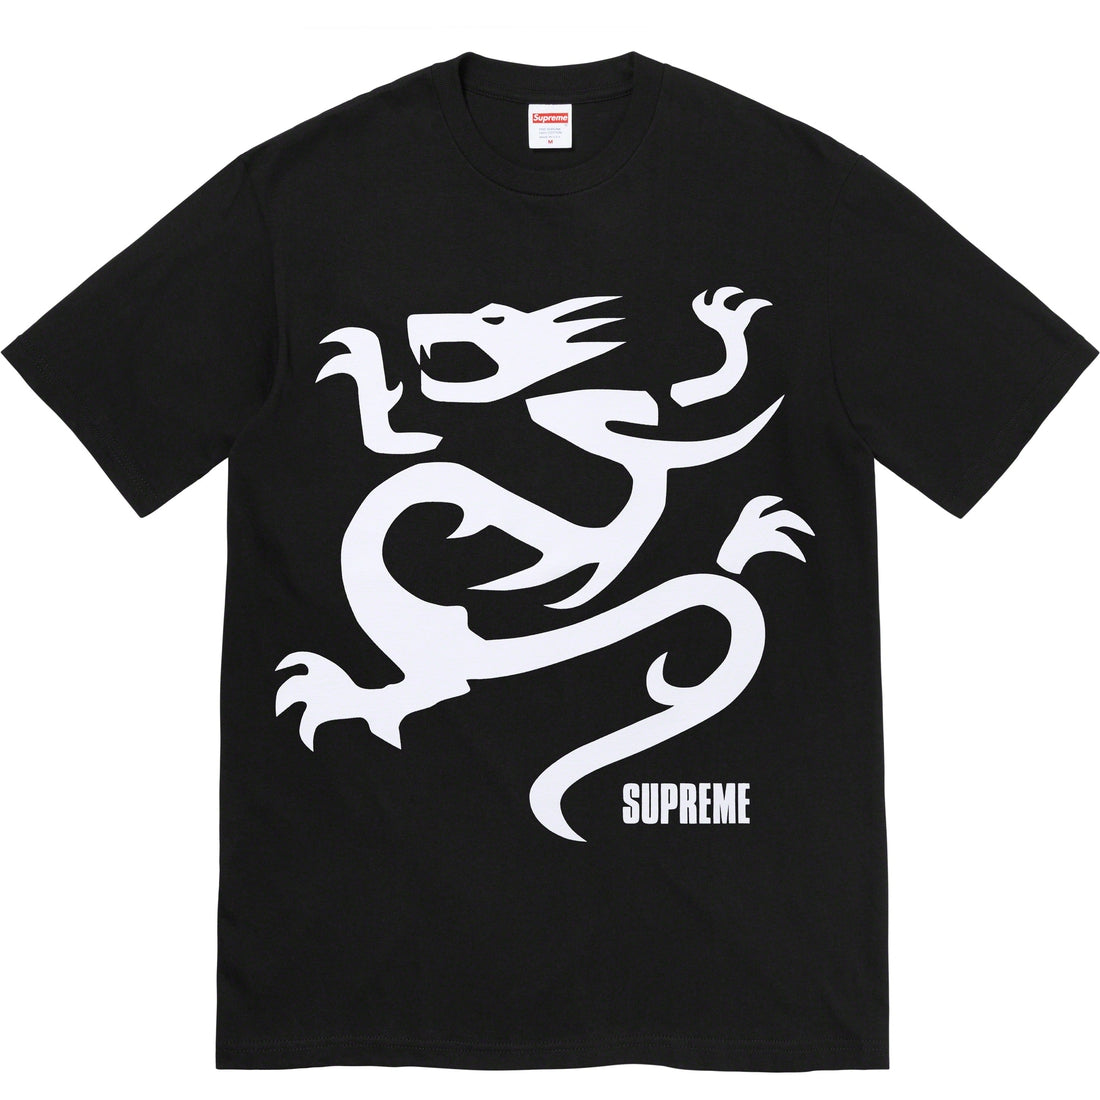 Supreme Tee - Mobb Deep Dragon